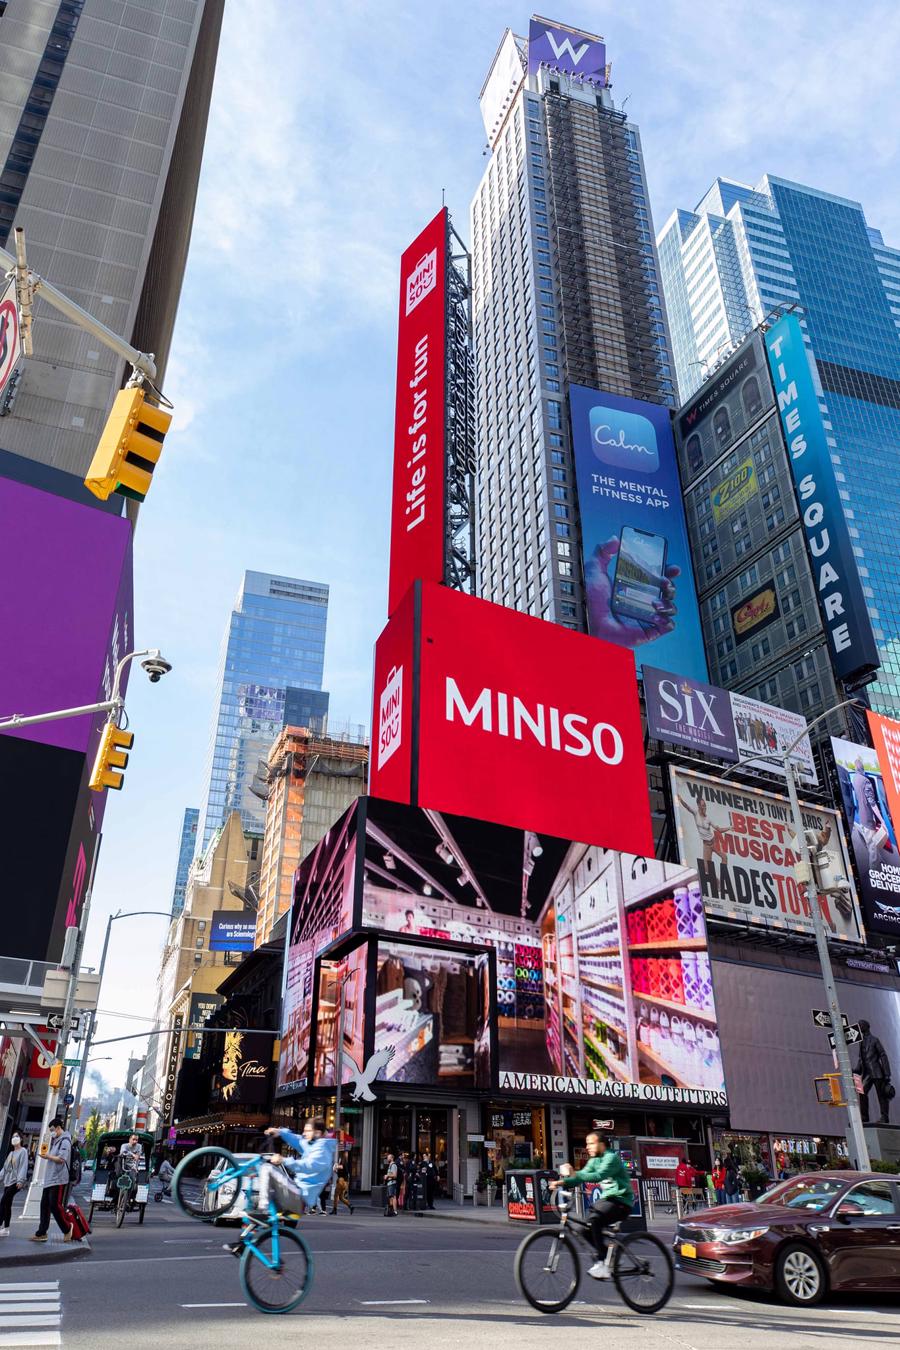 “Vua đạo nhái” Miniso và tham vọng khi mở cửa hàng tại New York - Ảnh 2